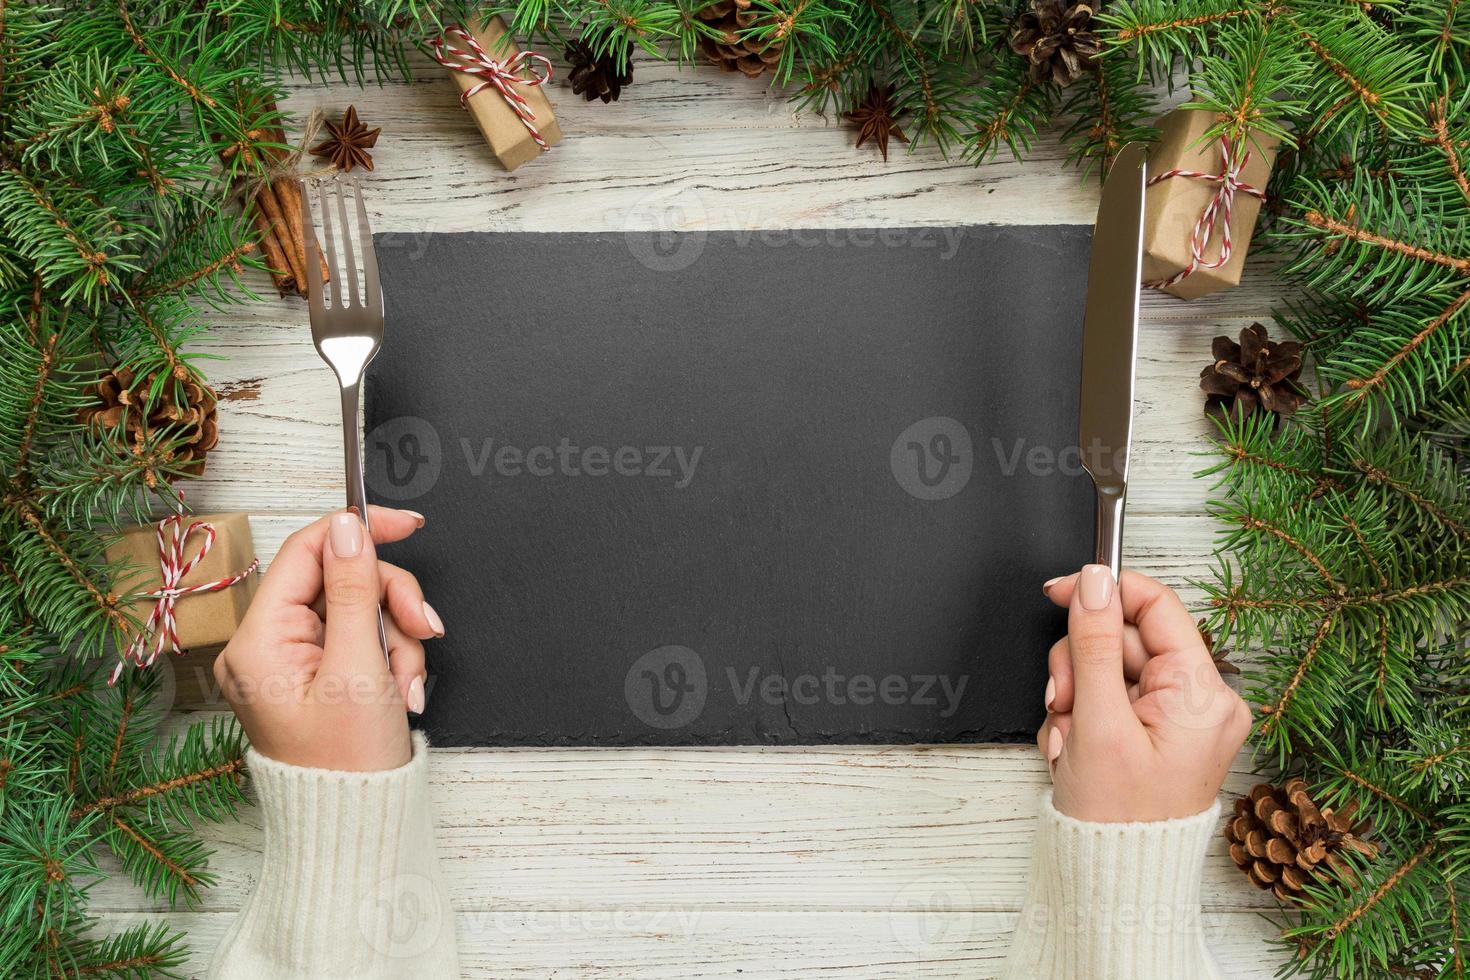 topp se flicka innehar gaffel och kniv i hand och är redo till äta. tömma svart skiffer rektangulär tallrik på trä- jul bakgrund. Semester middag maträtt begrepp med ny år dekor foto